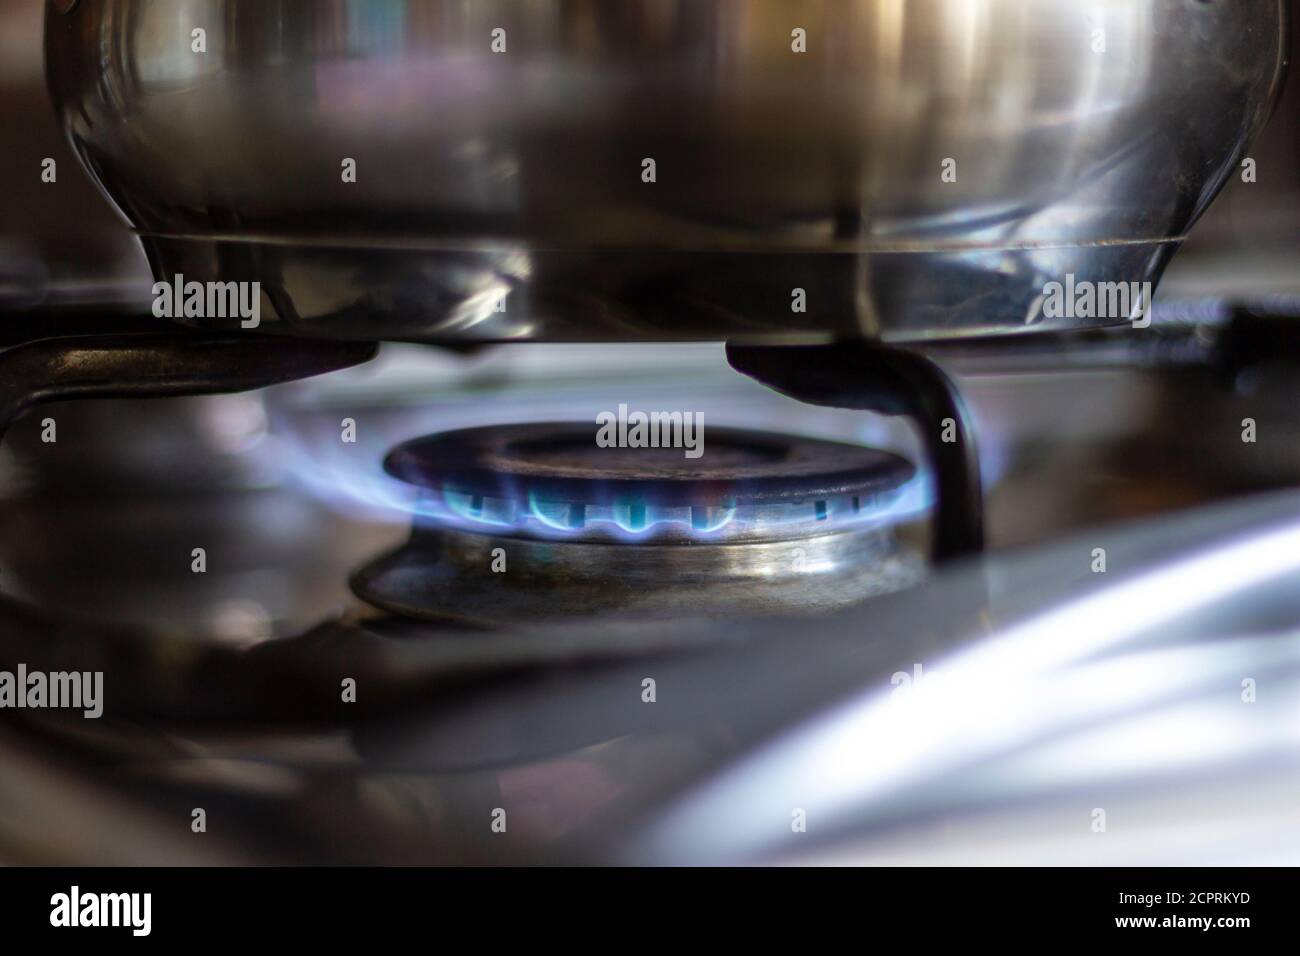 Nahaufnahme eines Edelstahltopfes, der auf einem Küchenherd mit Gasbrenner steht. Stockfoto